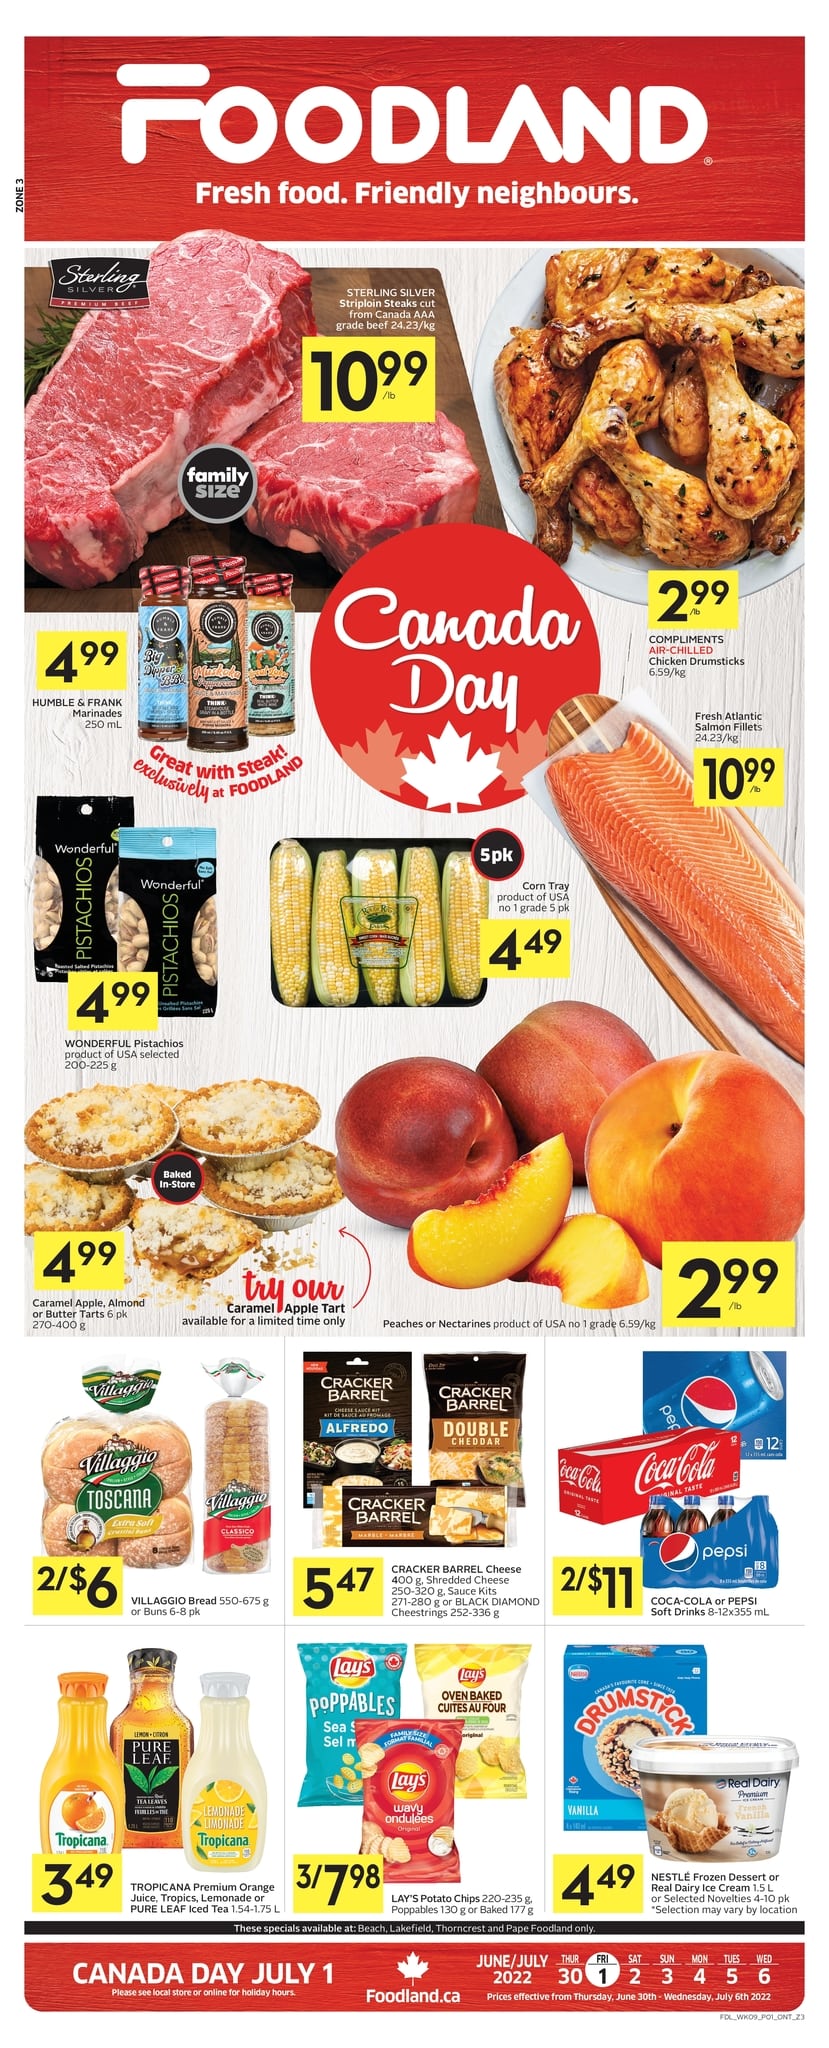 Foodland - Weekly Flyer Specials